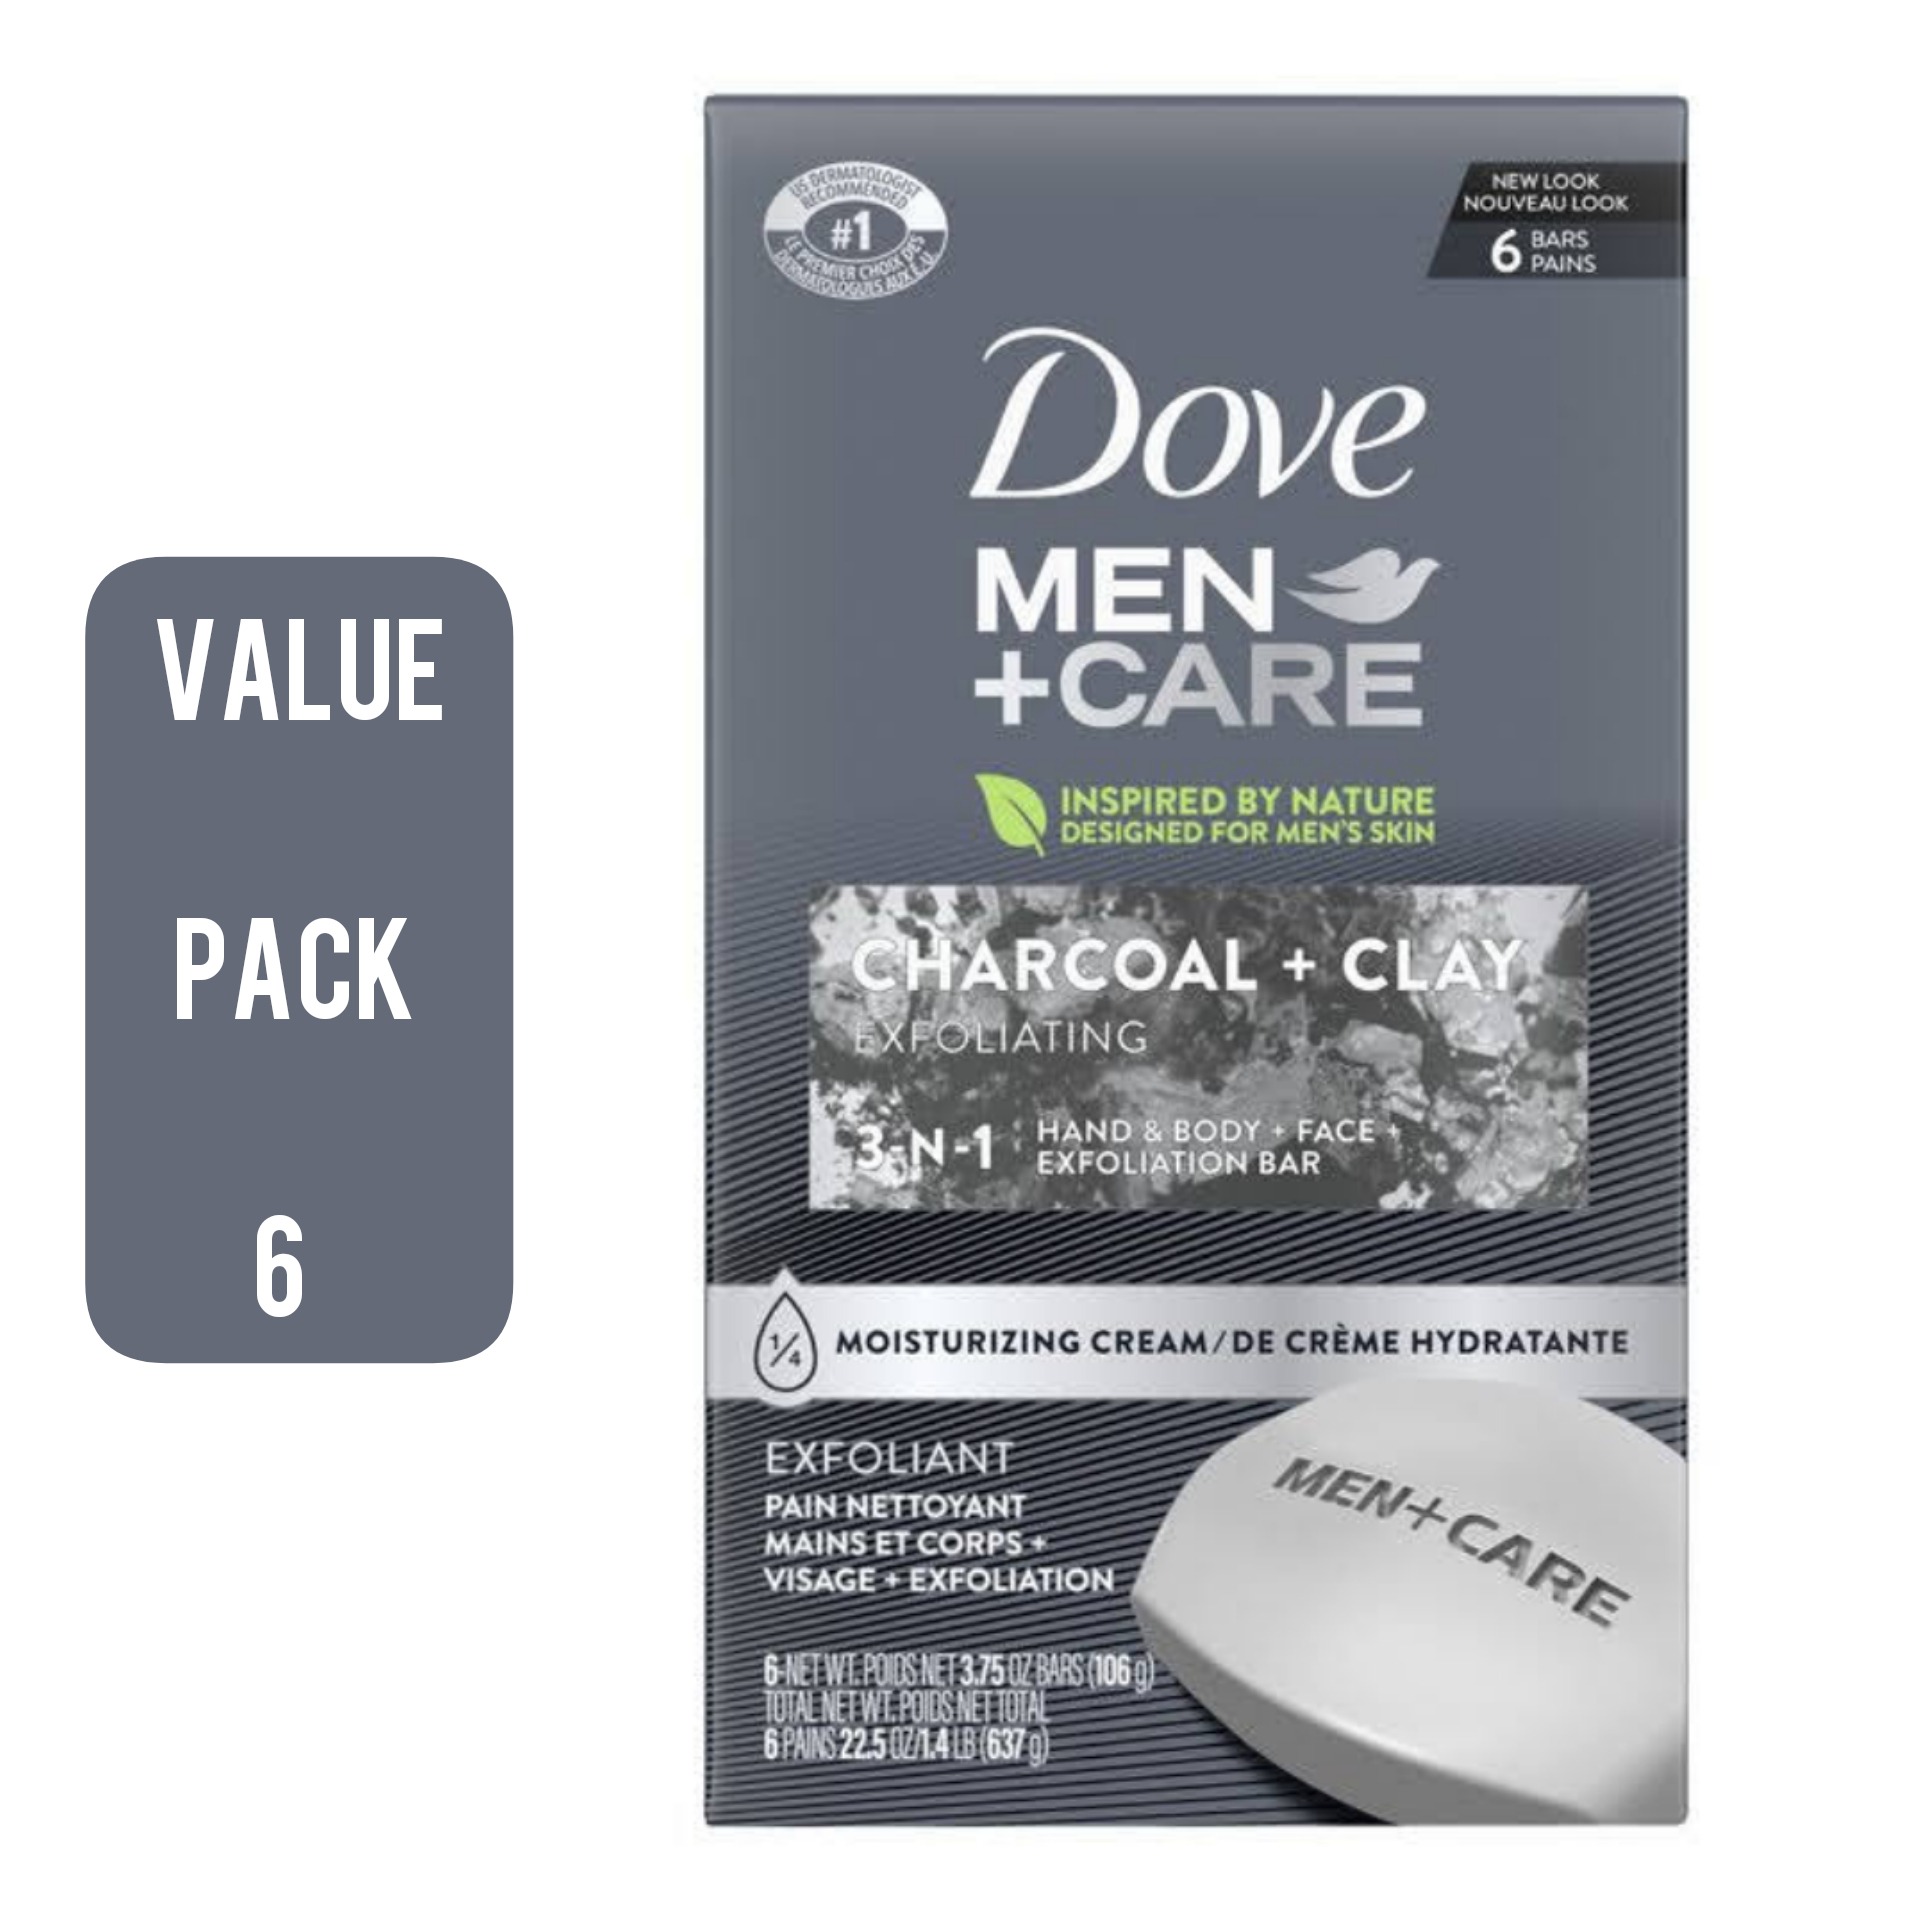 6 Pcs Bundle Dove Men +Care Charcoal+Clay 106g (Cargo)